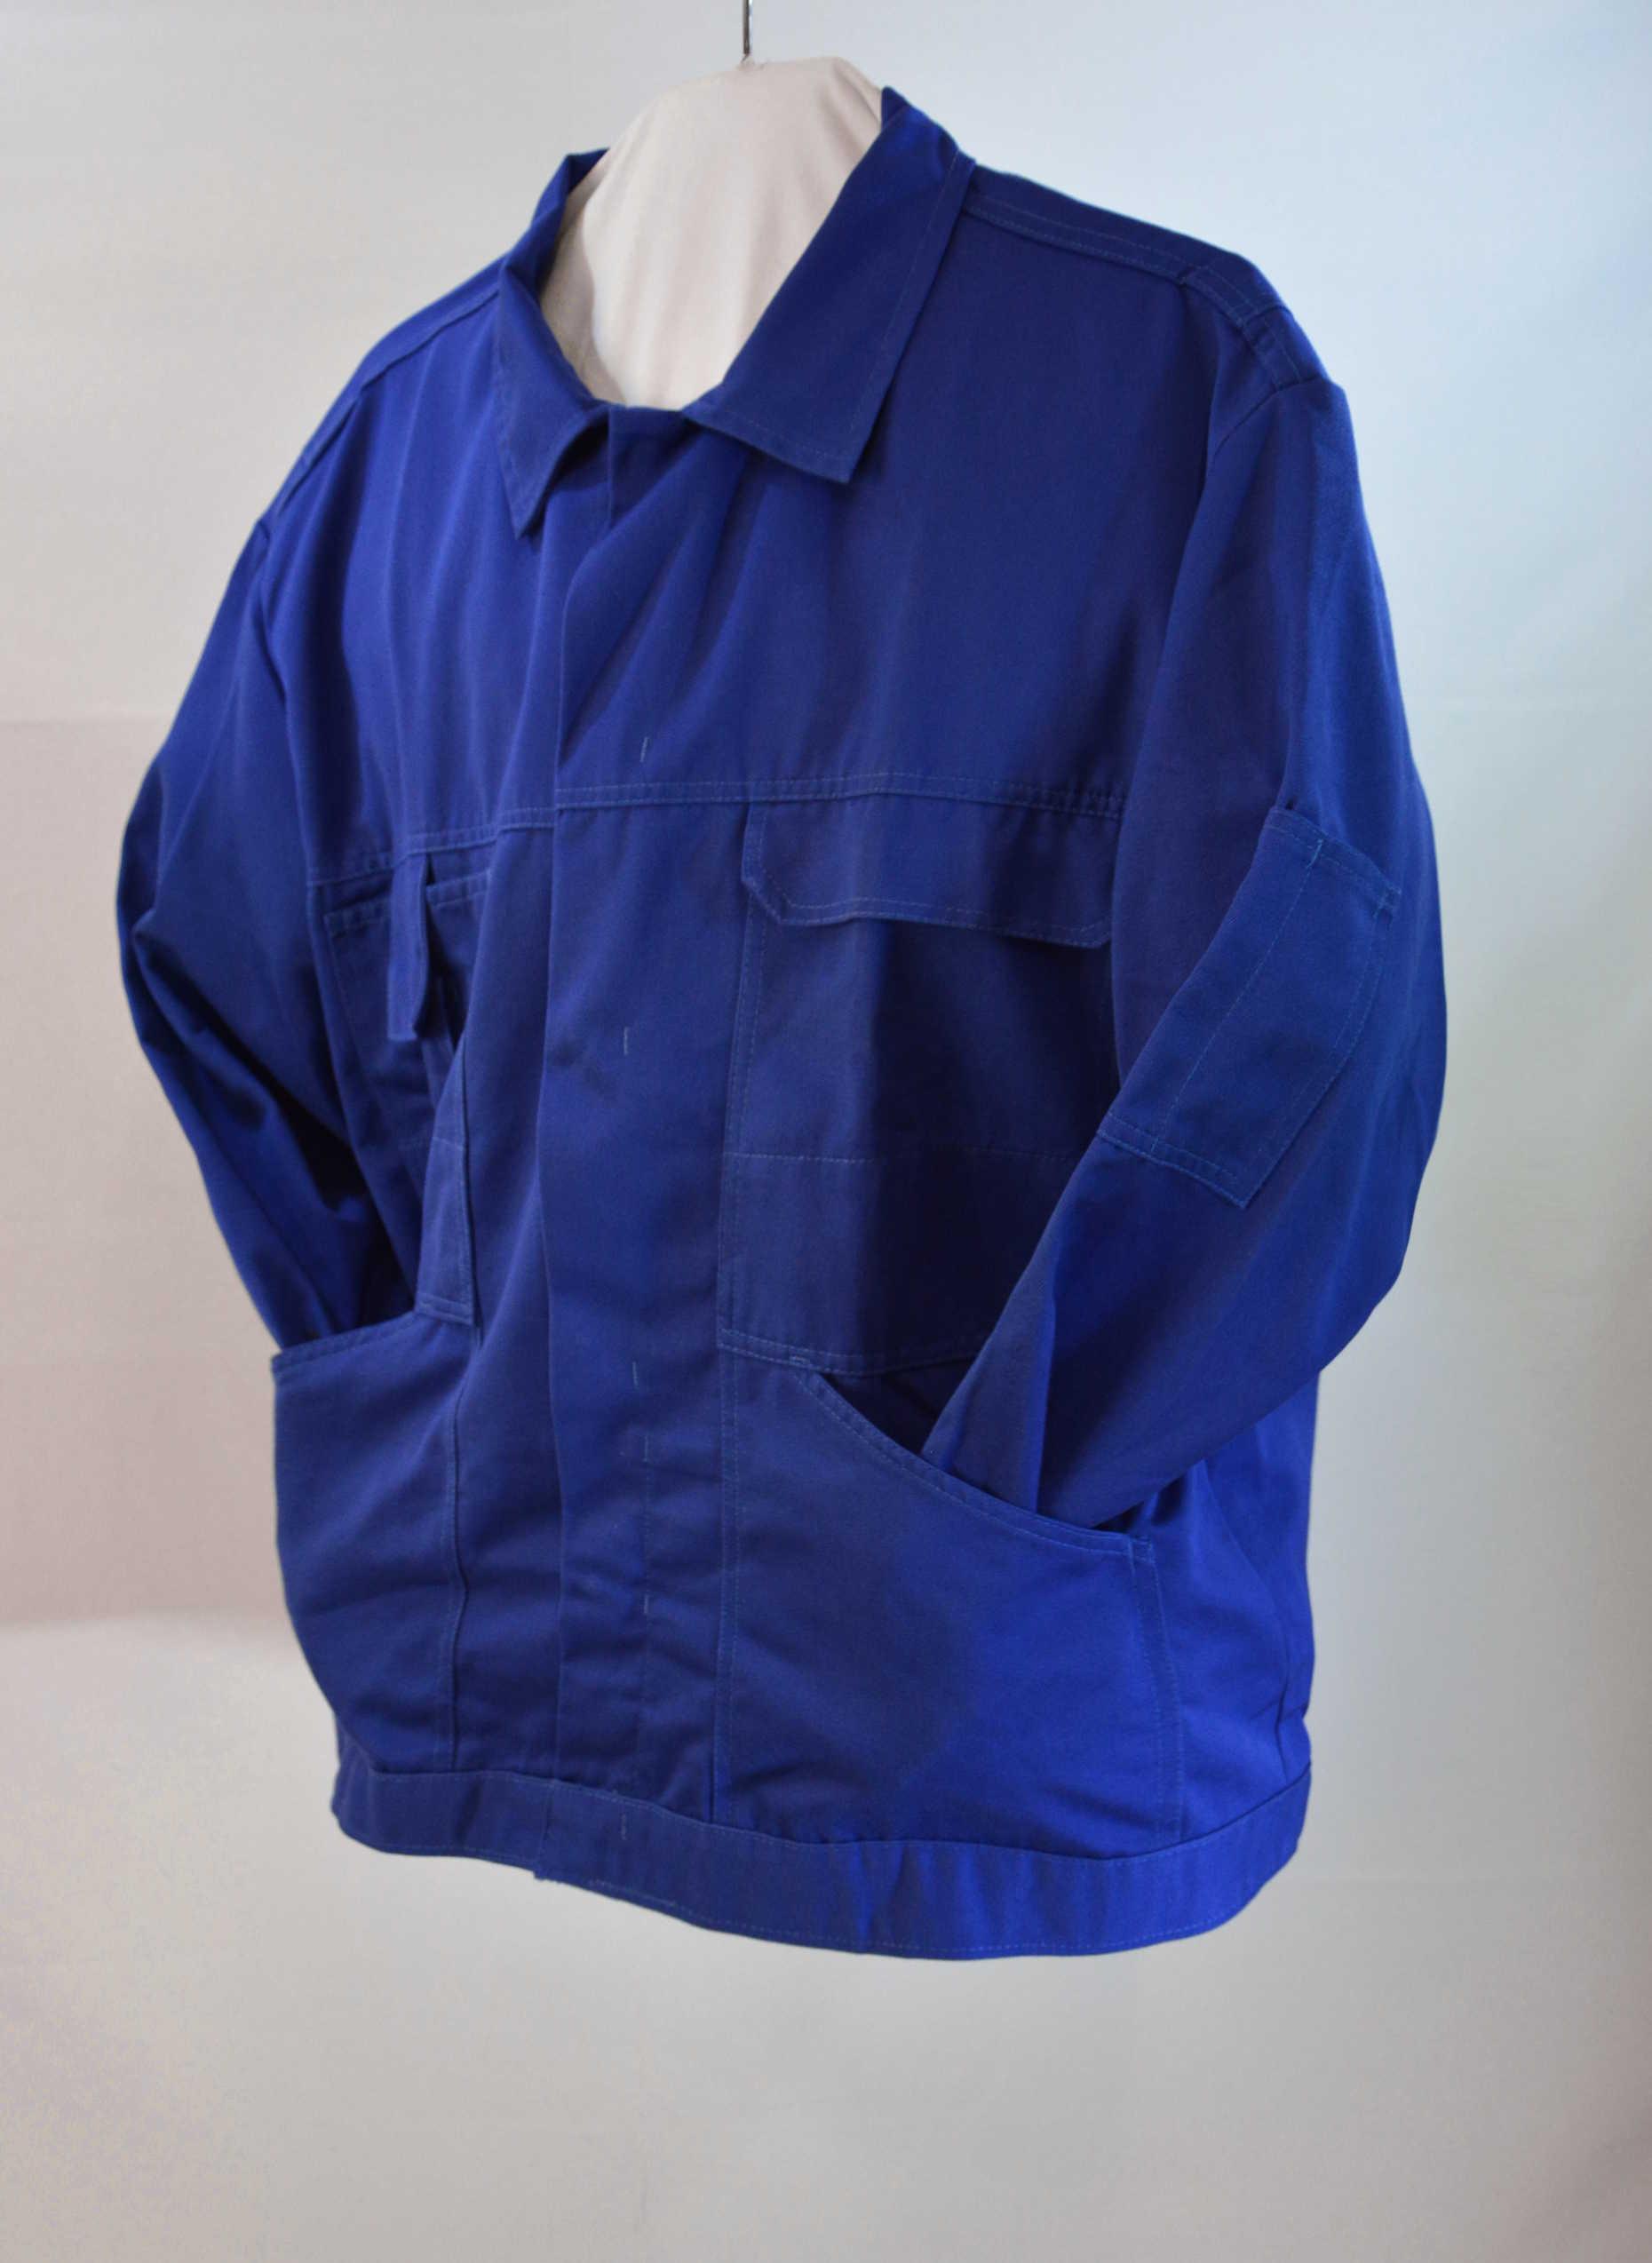 Arbeitsjacke mit verdeckter Druckknopfleiste in königsblau